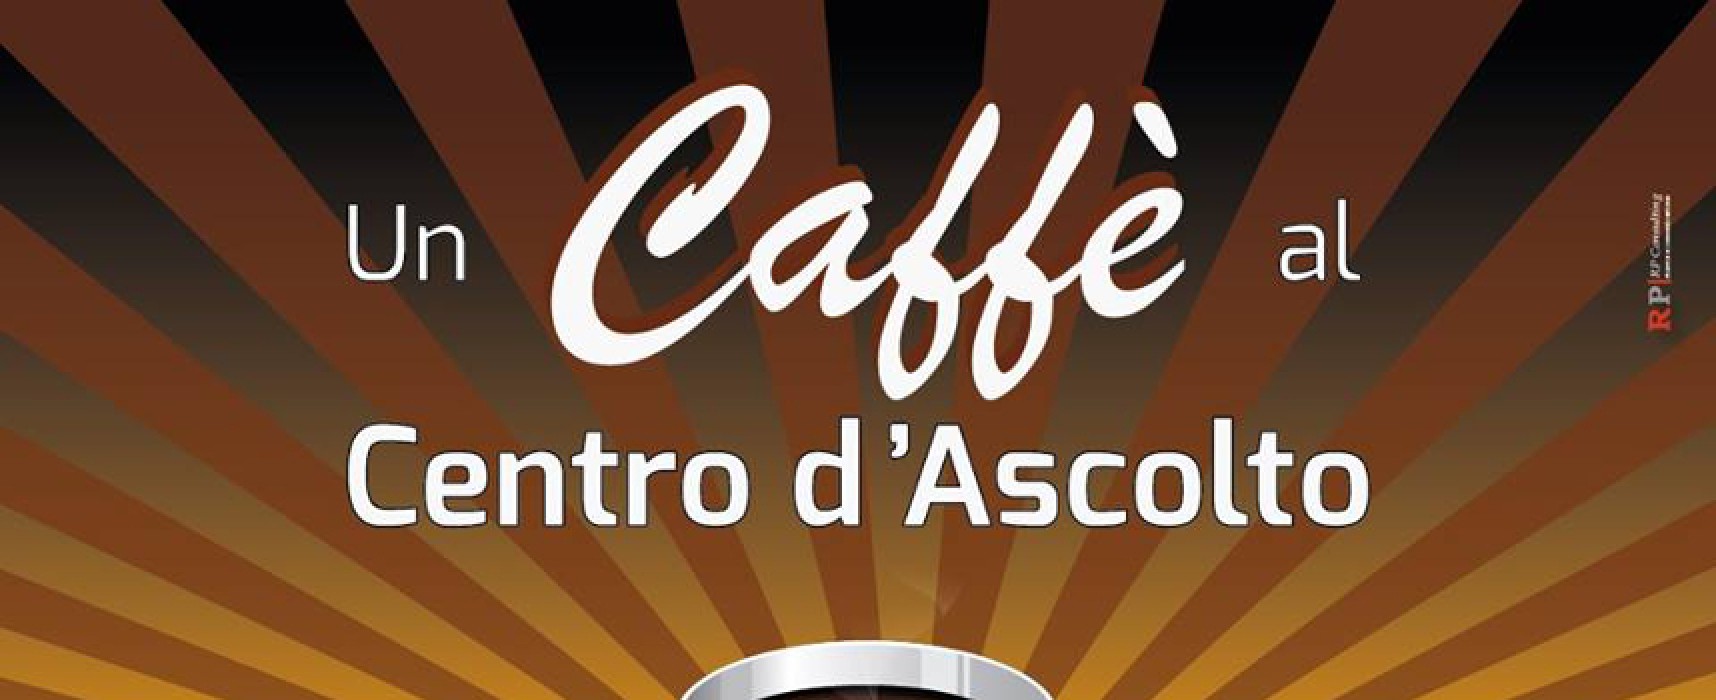 Fondazione Dcl, domani ripartono le iniziative “Un caffè al centro d’ascolto”